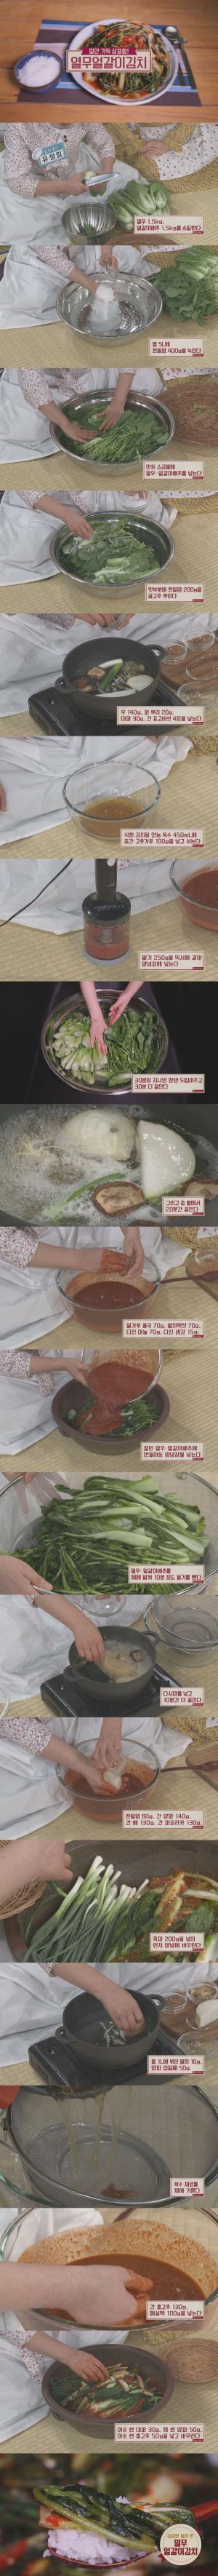 ‘알토란’ 열무얼갈이김치-오이깍두기-총각무김치, 레시피에 이목집중…’만드는 법은?’